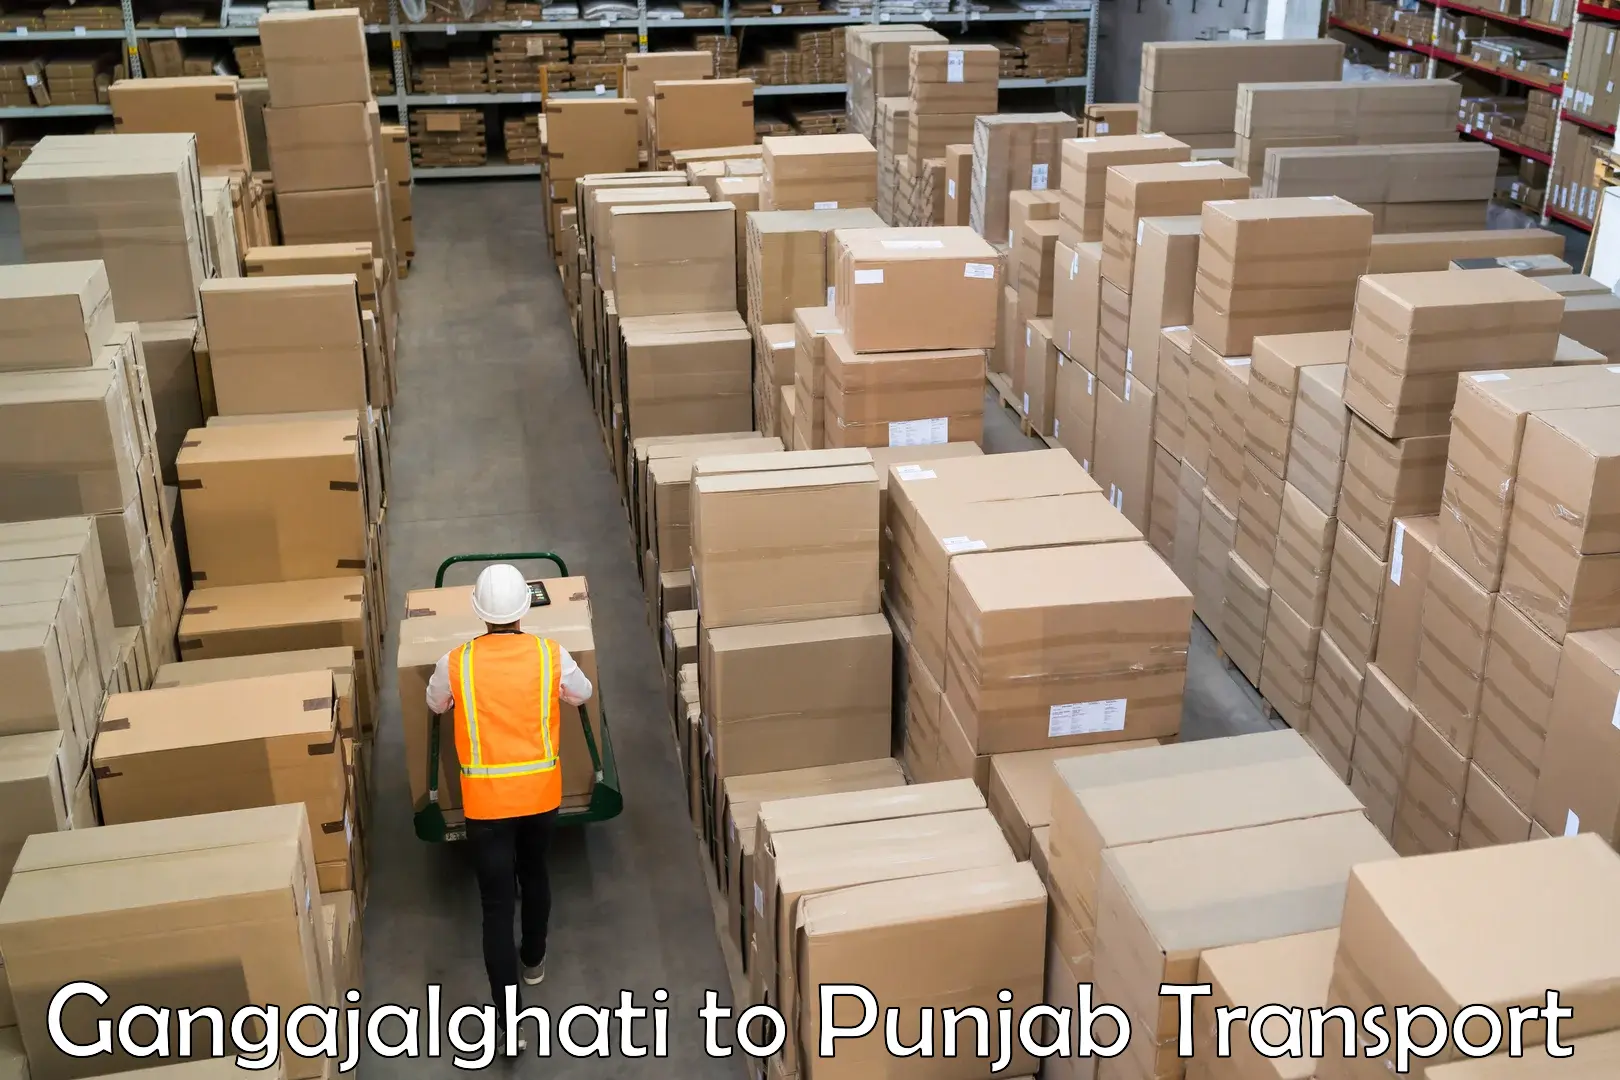 Shipping partner Gangajalghati to Nangal